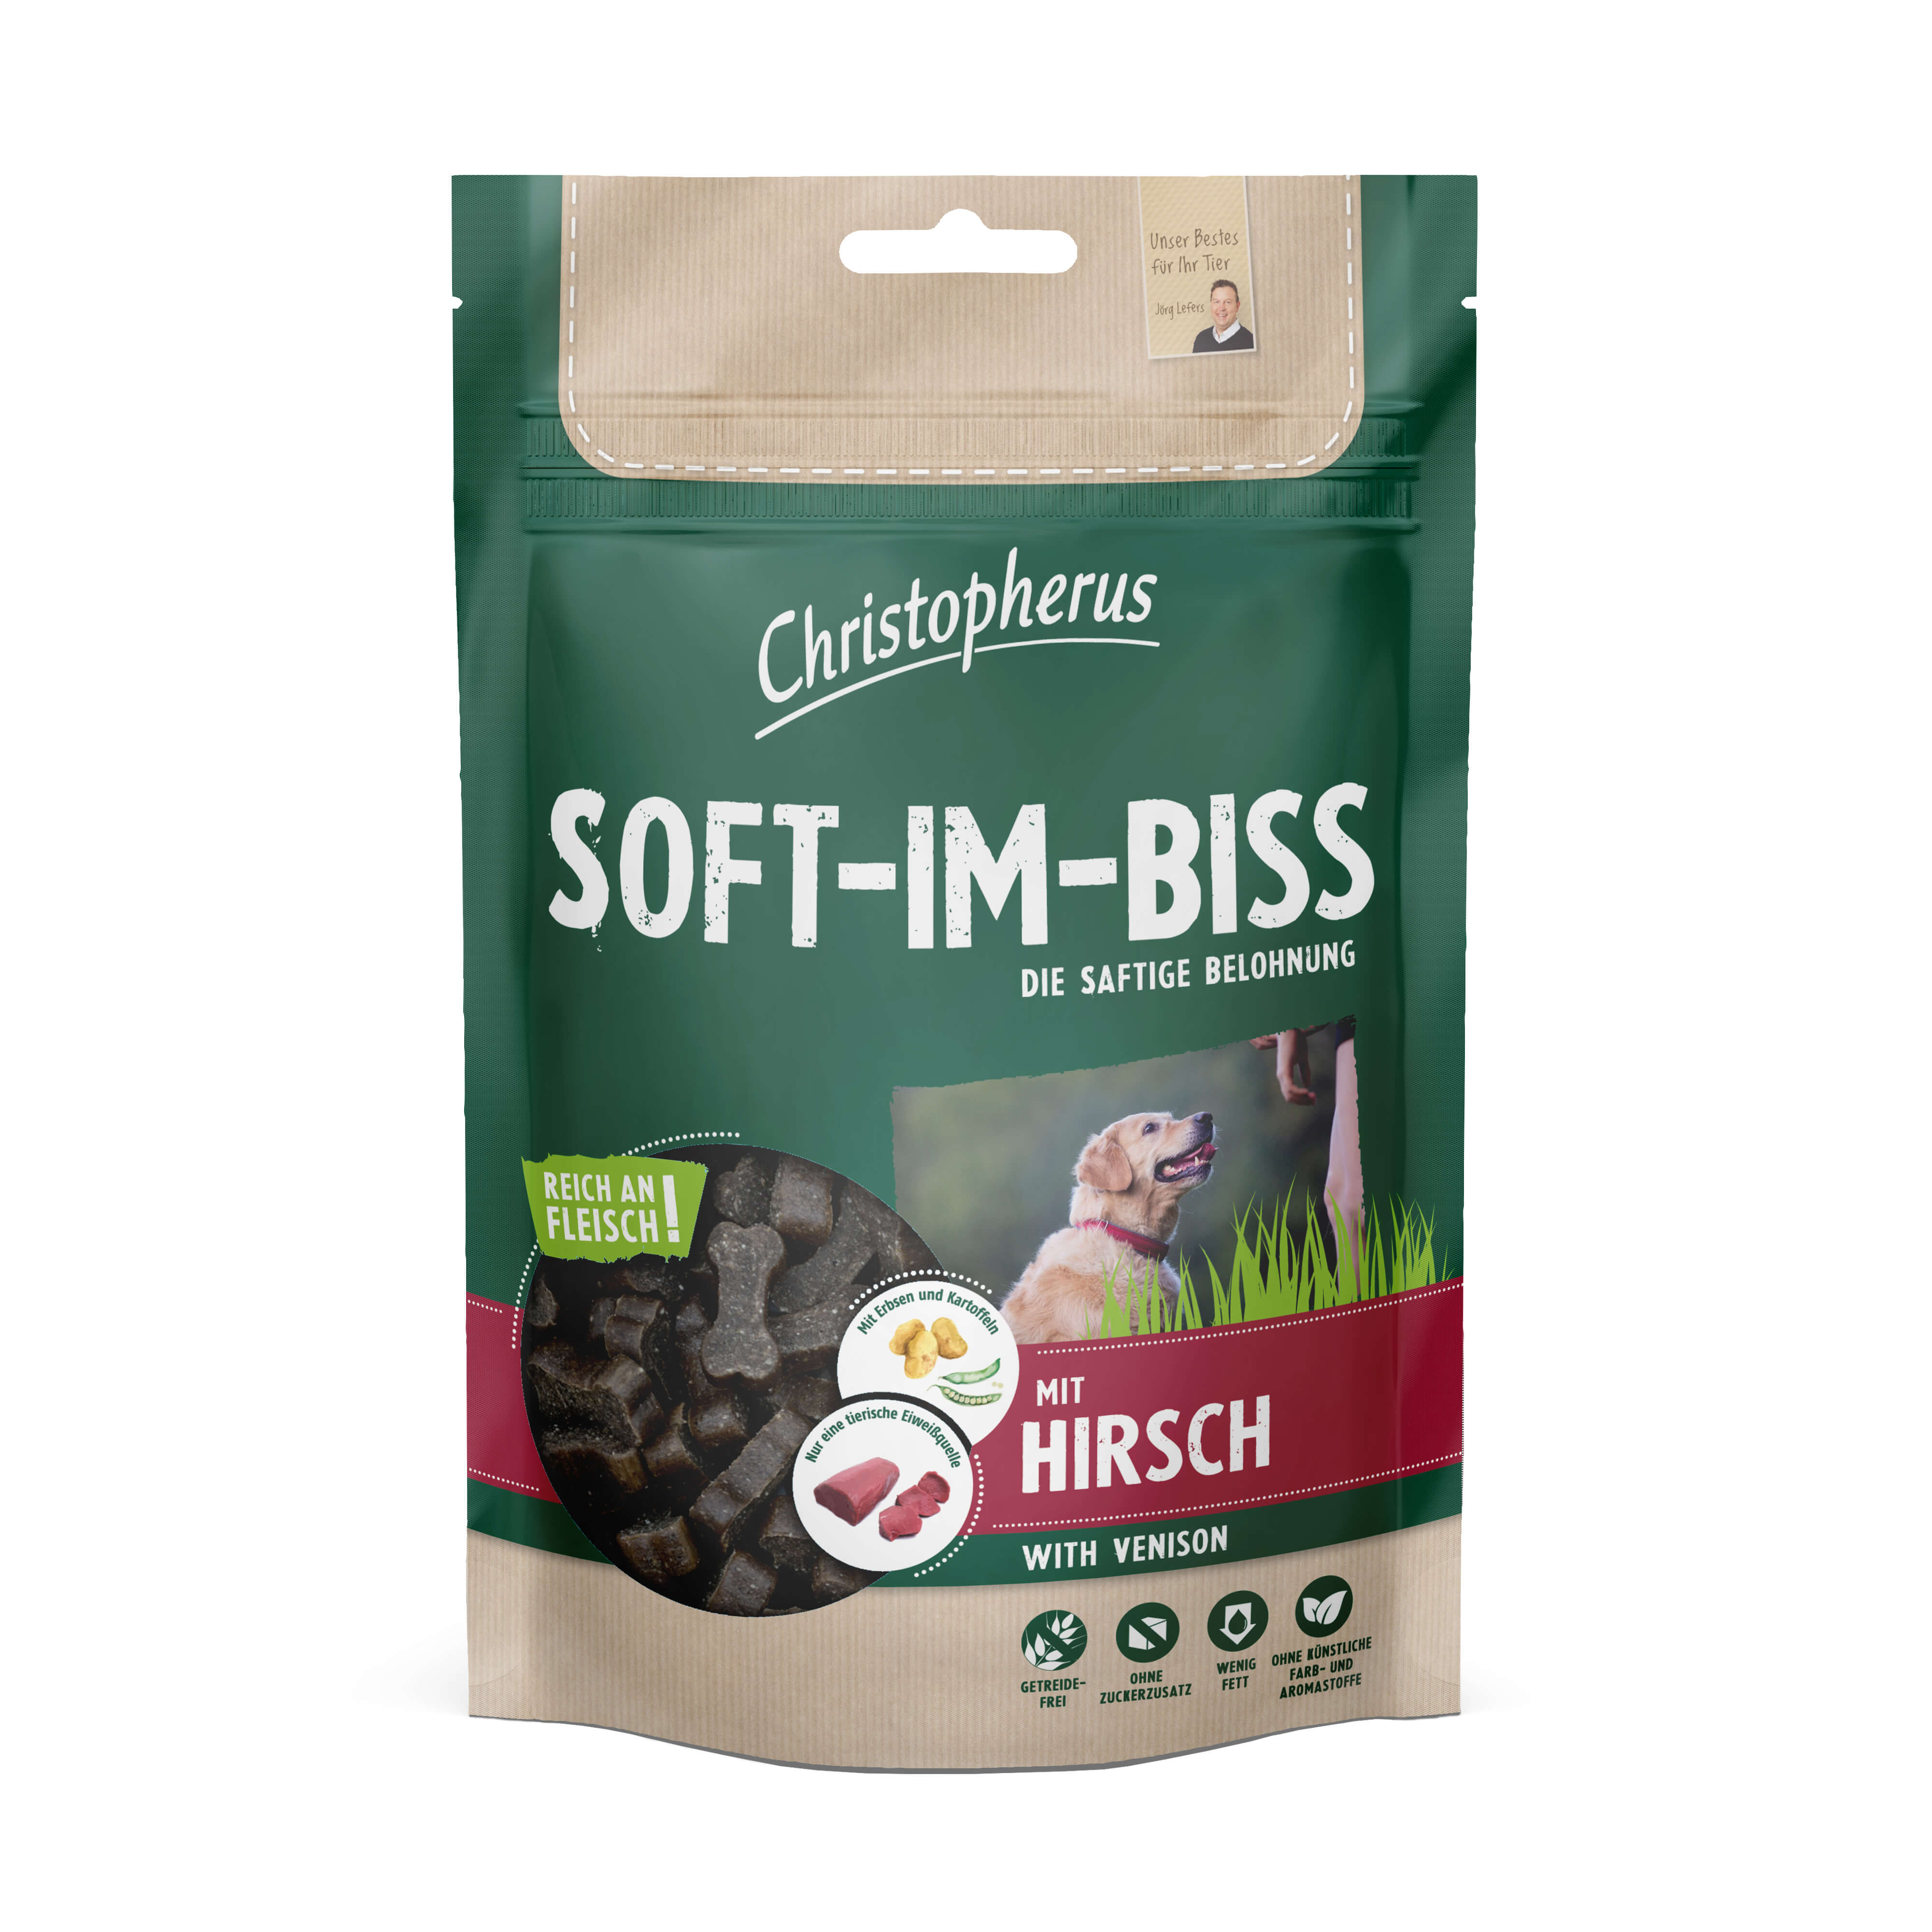 Christopherus Weicher Snack für Hunde Soft-im-Biss Hirsch 125g Verpackung